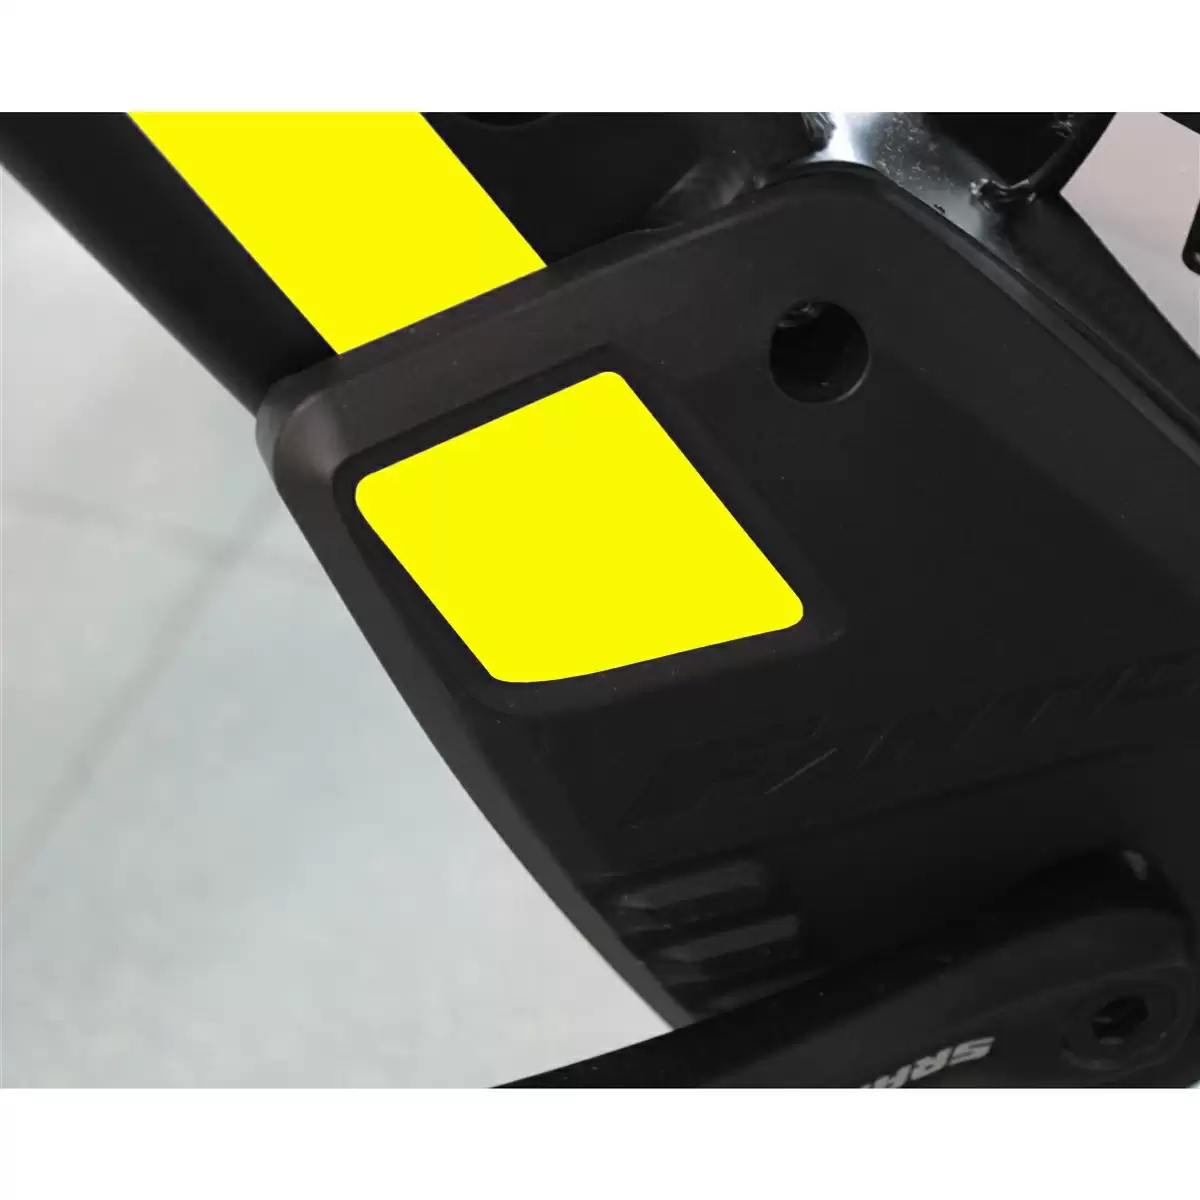 Adhesivo de repuesto para Integra carter amarillo fluo - image